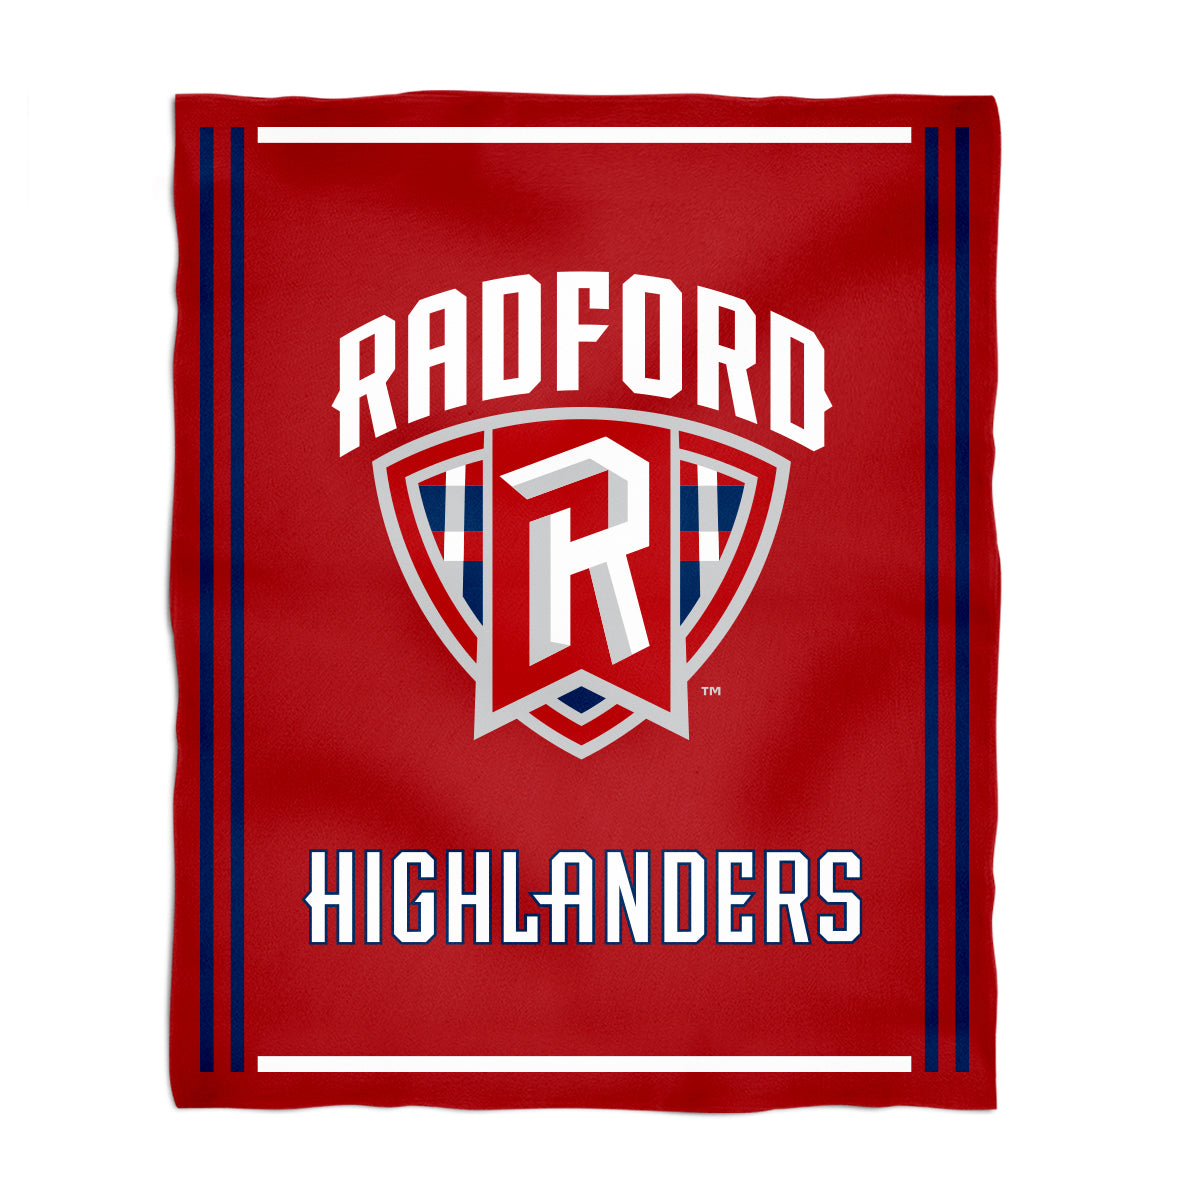 Radford University Highlanders Kids Game Day Red Plush Soft Minky Blanket 36 x 48 Mascot